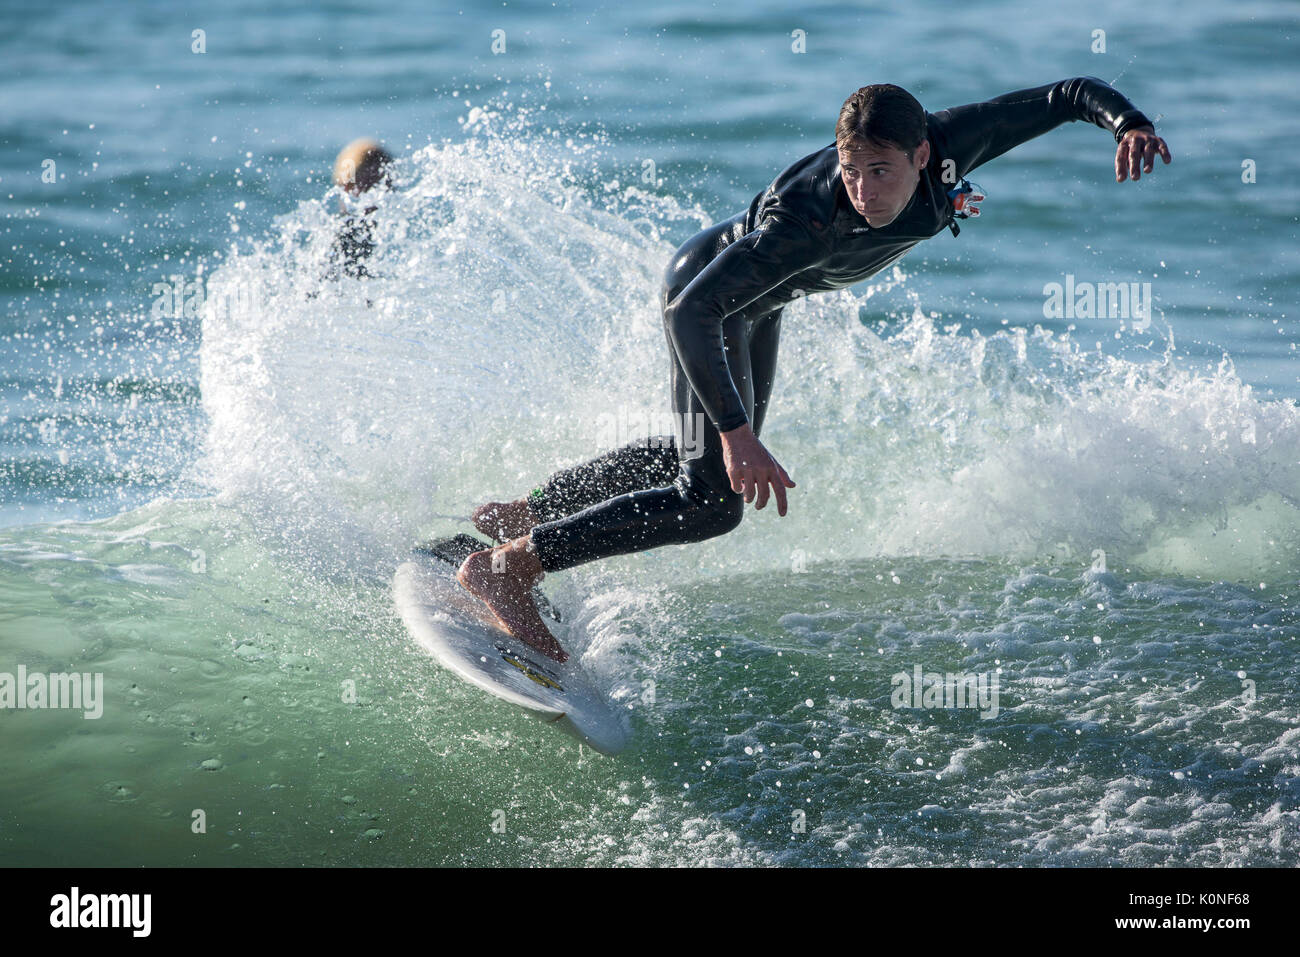 Un surfer une vague à la plage de Fistral à Newquay. Banque D'Images